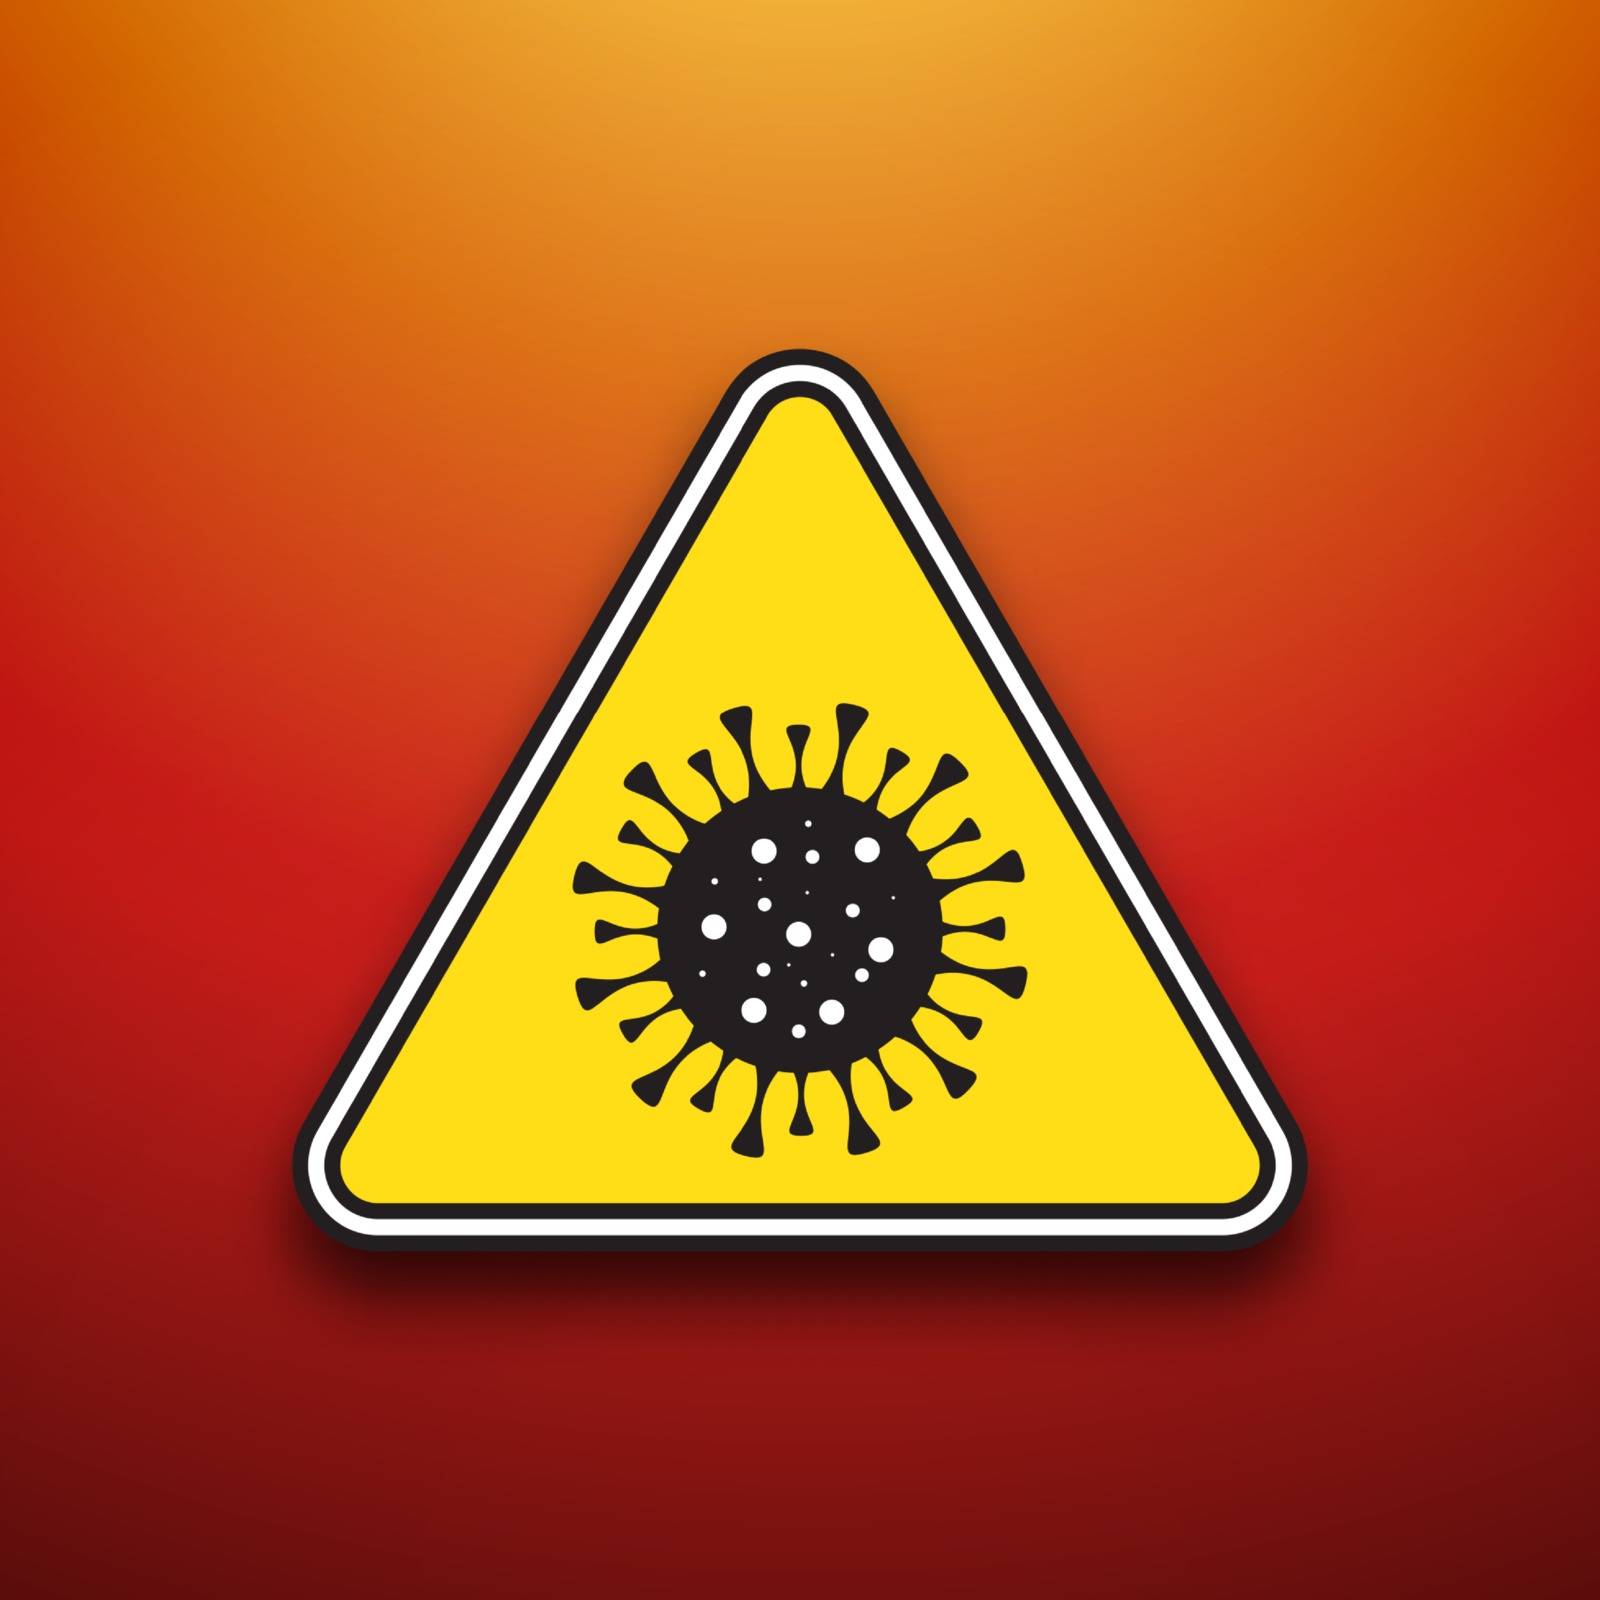 Warning danger of spreading the virus outbreak by templator